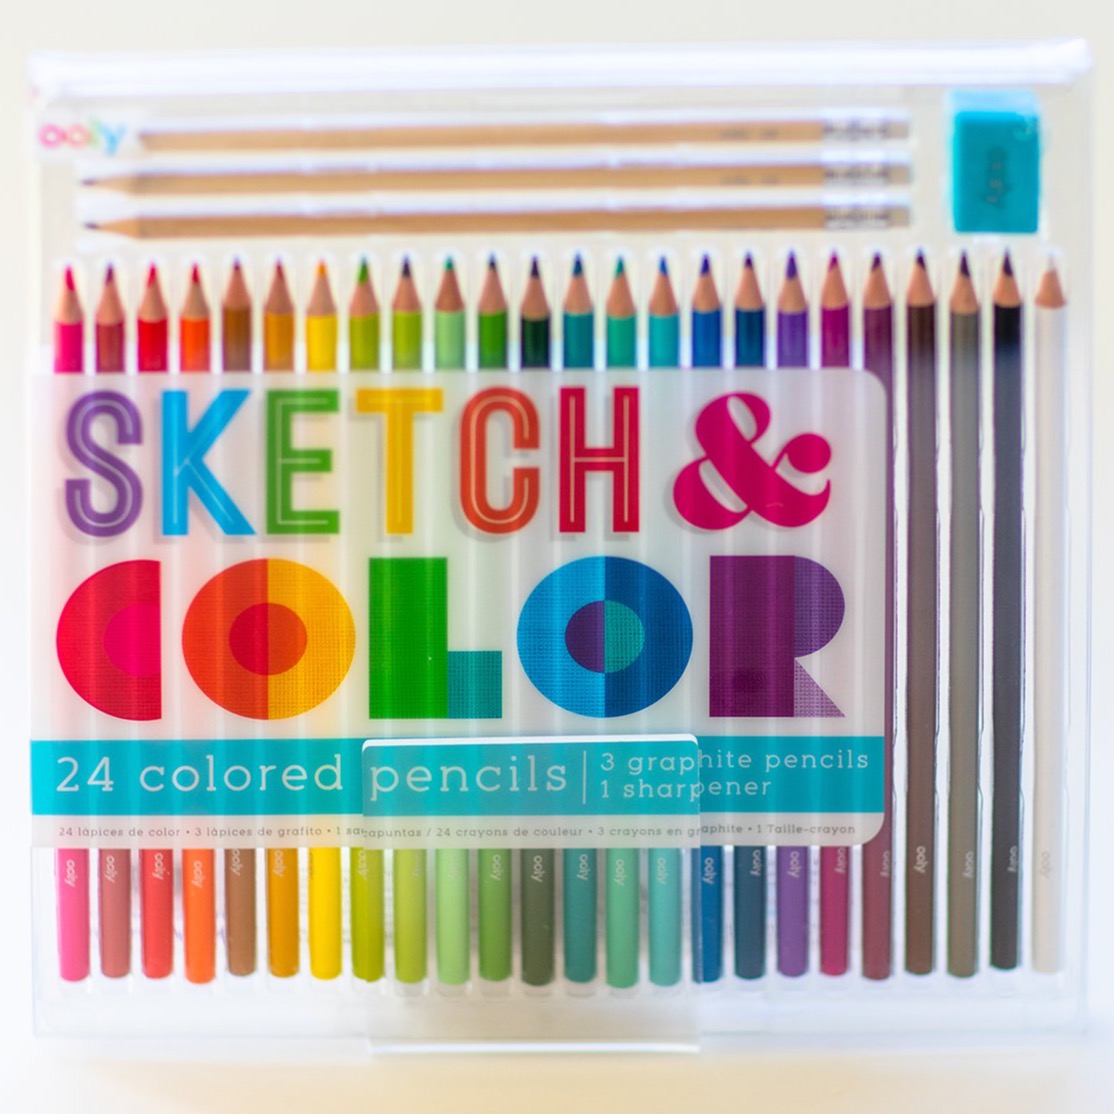 Sketch & Color Colored Pencils